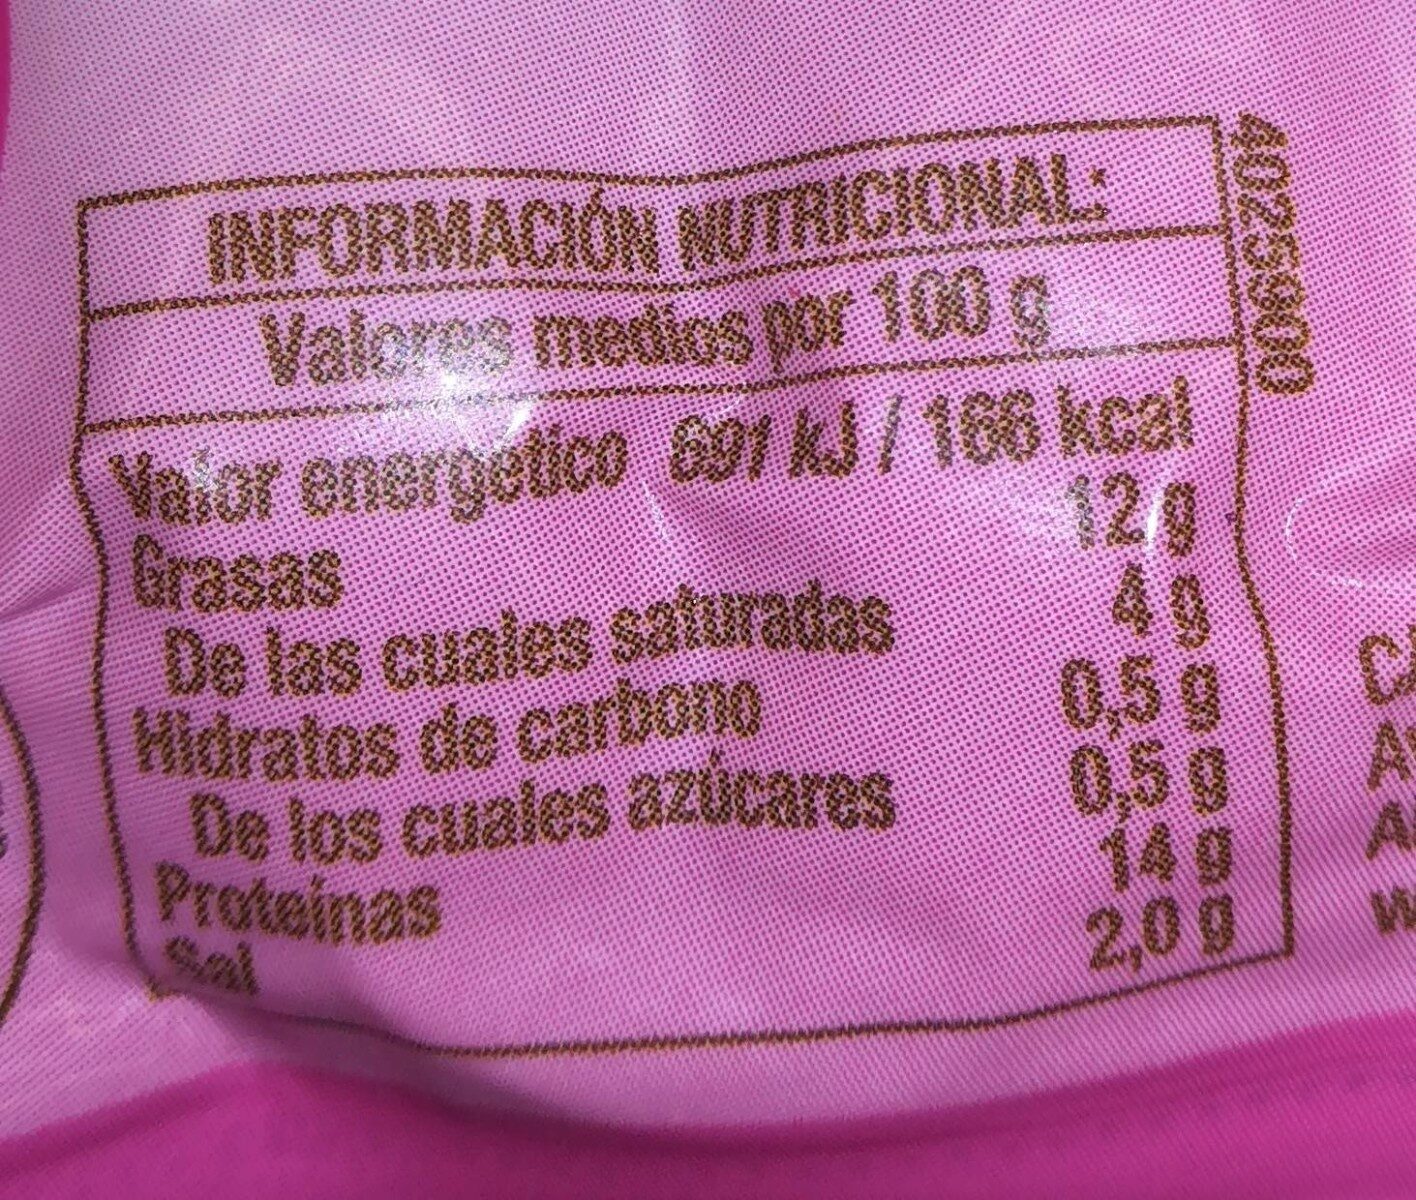 Cuida-t+ salchichas de pavo - Informació nutricional - es